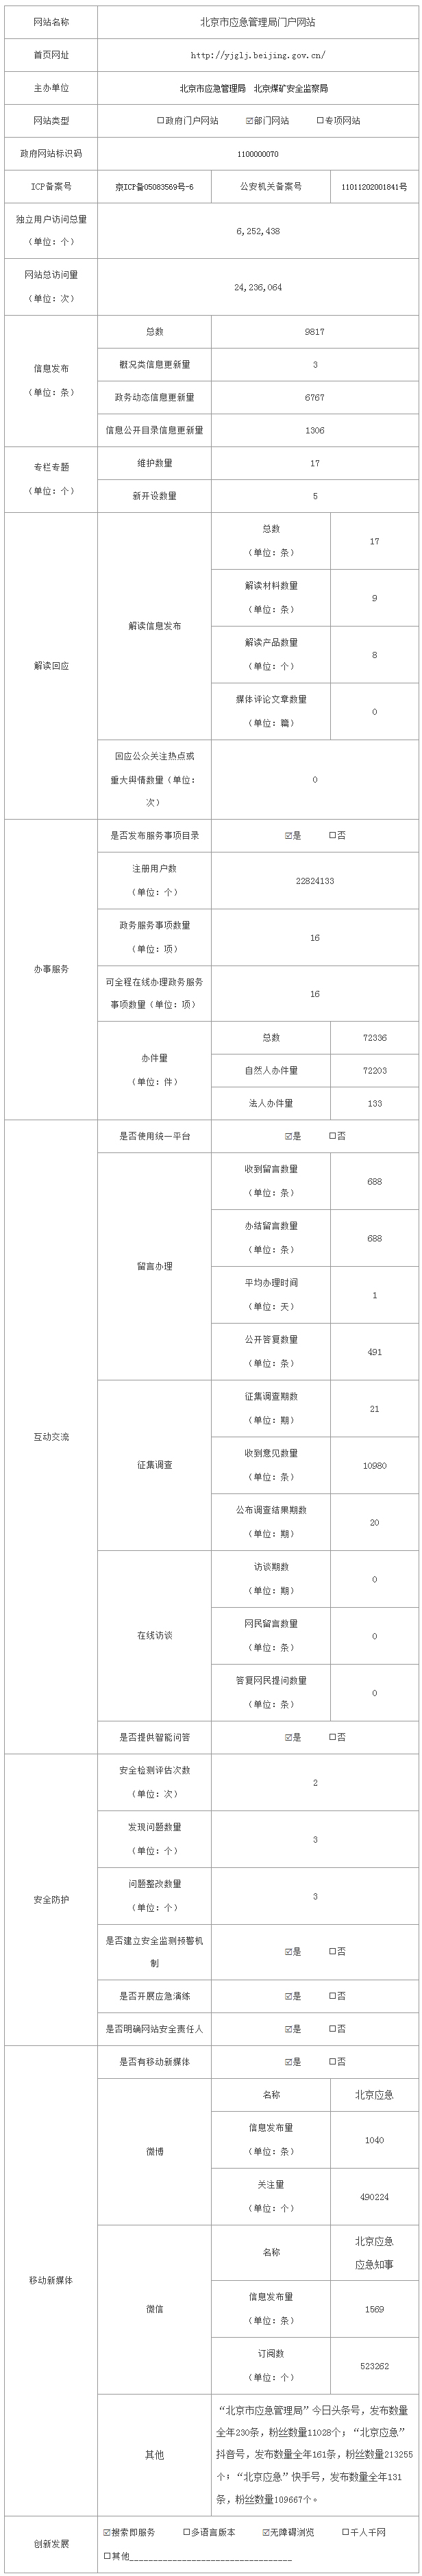 北京市应急管理局2020年政府网站年度工作报表